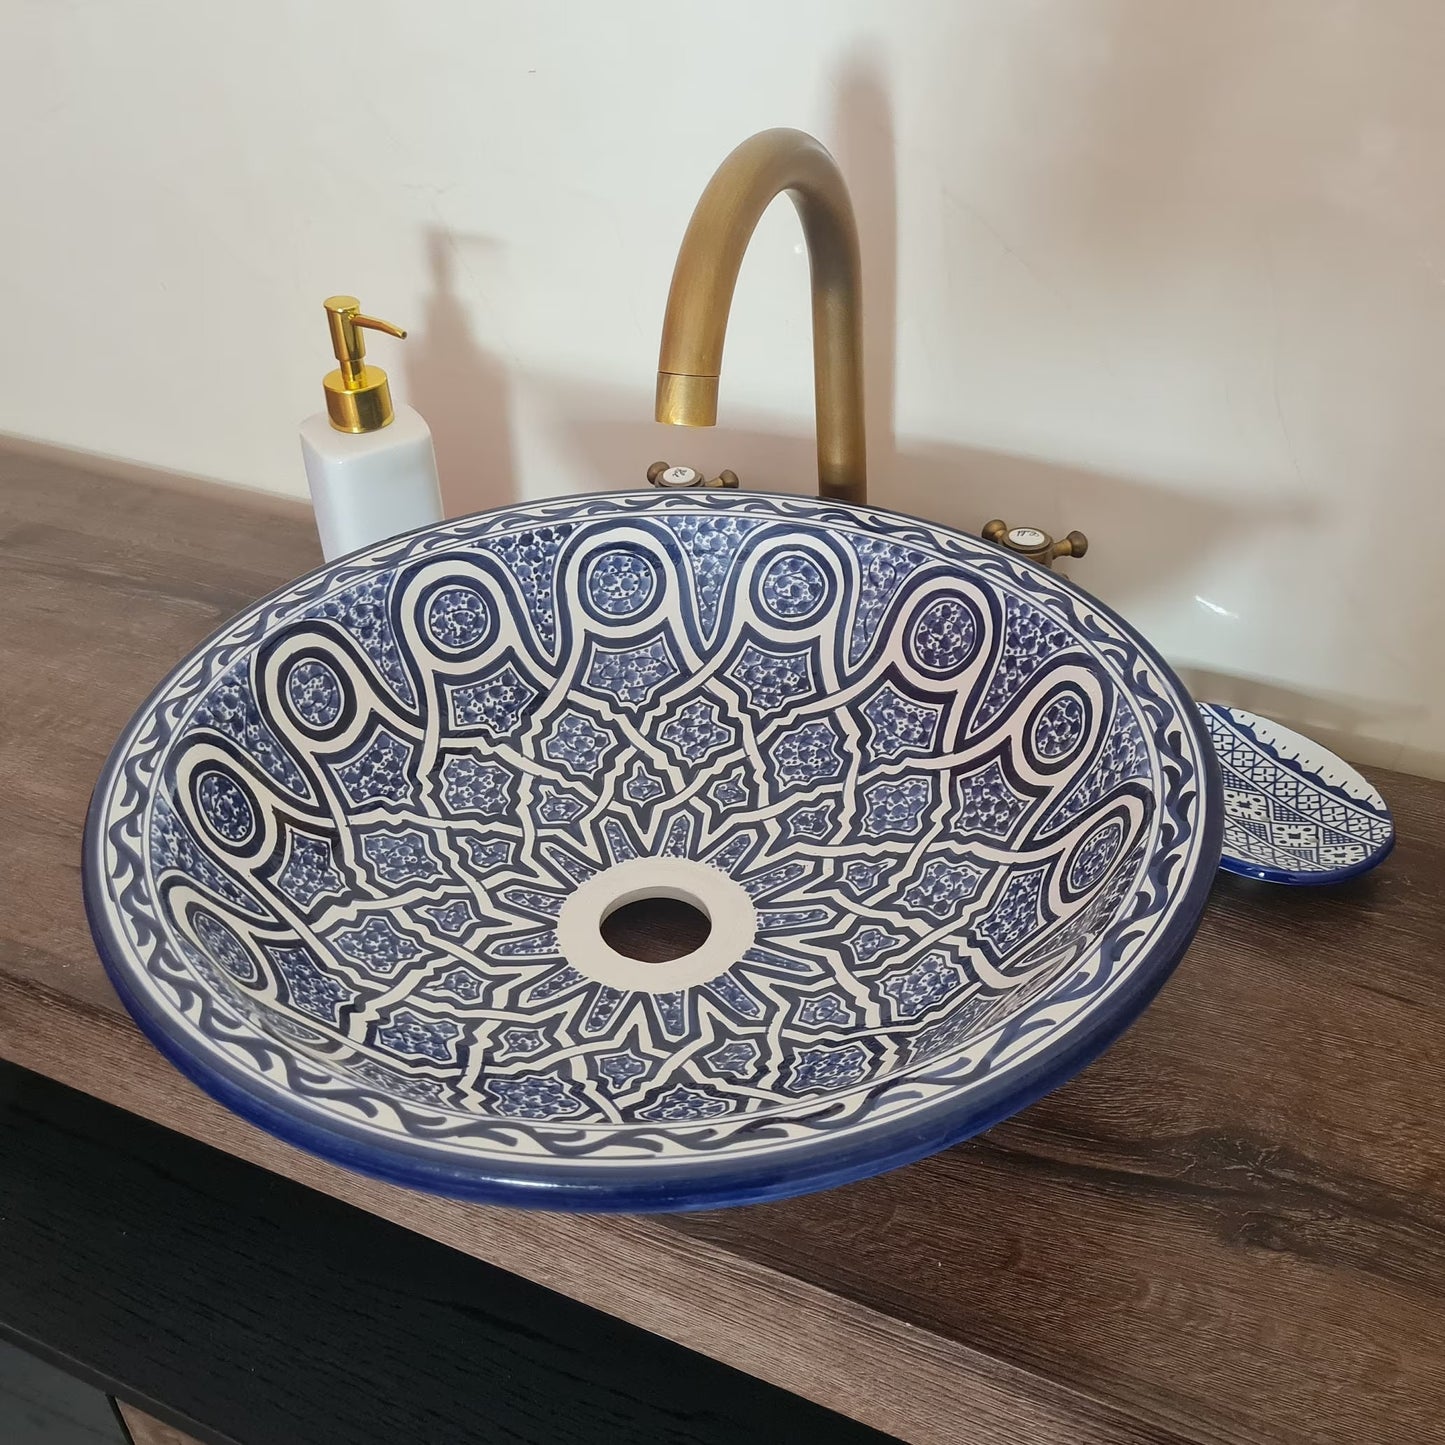 Moroccan sink | moroccan ceramic sink | bathroom sink | moroccan bathroom basin | cloakroom basin | Bleu sink #163